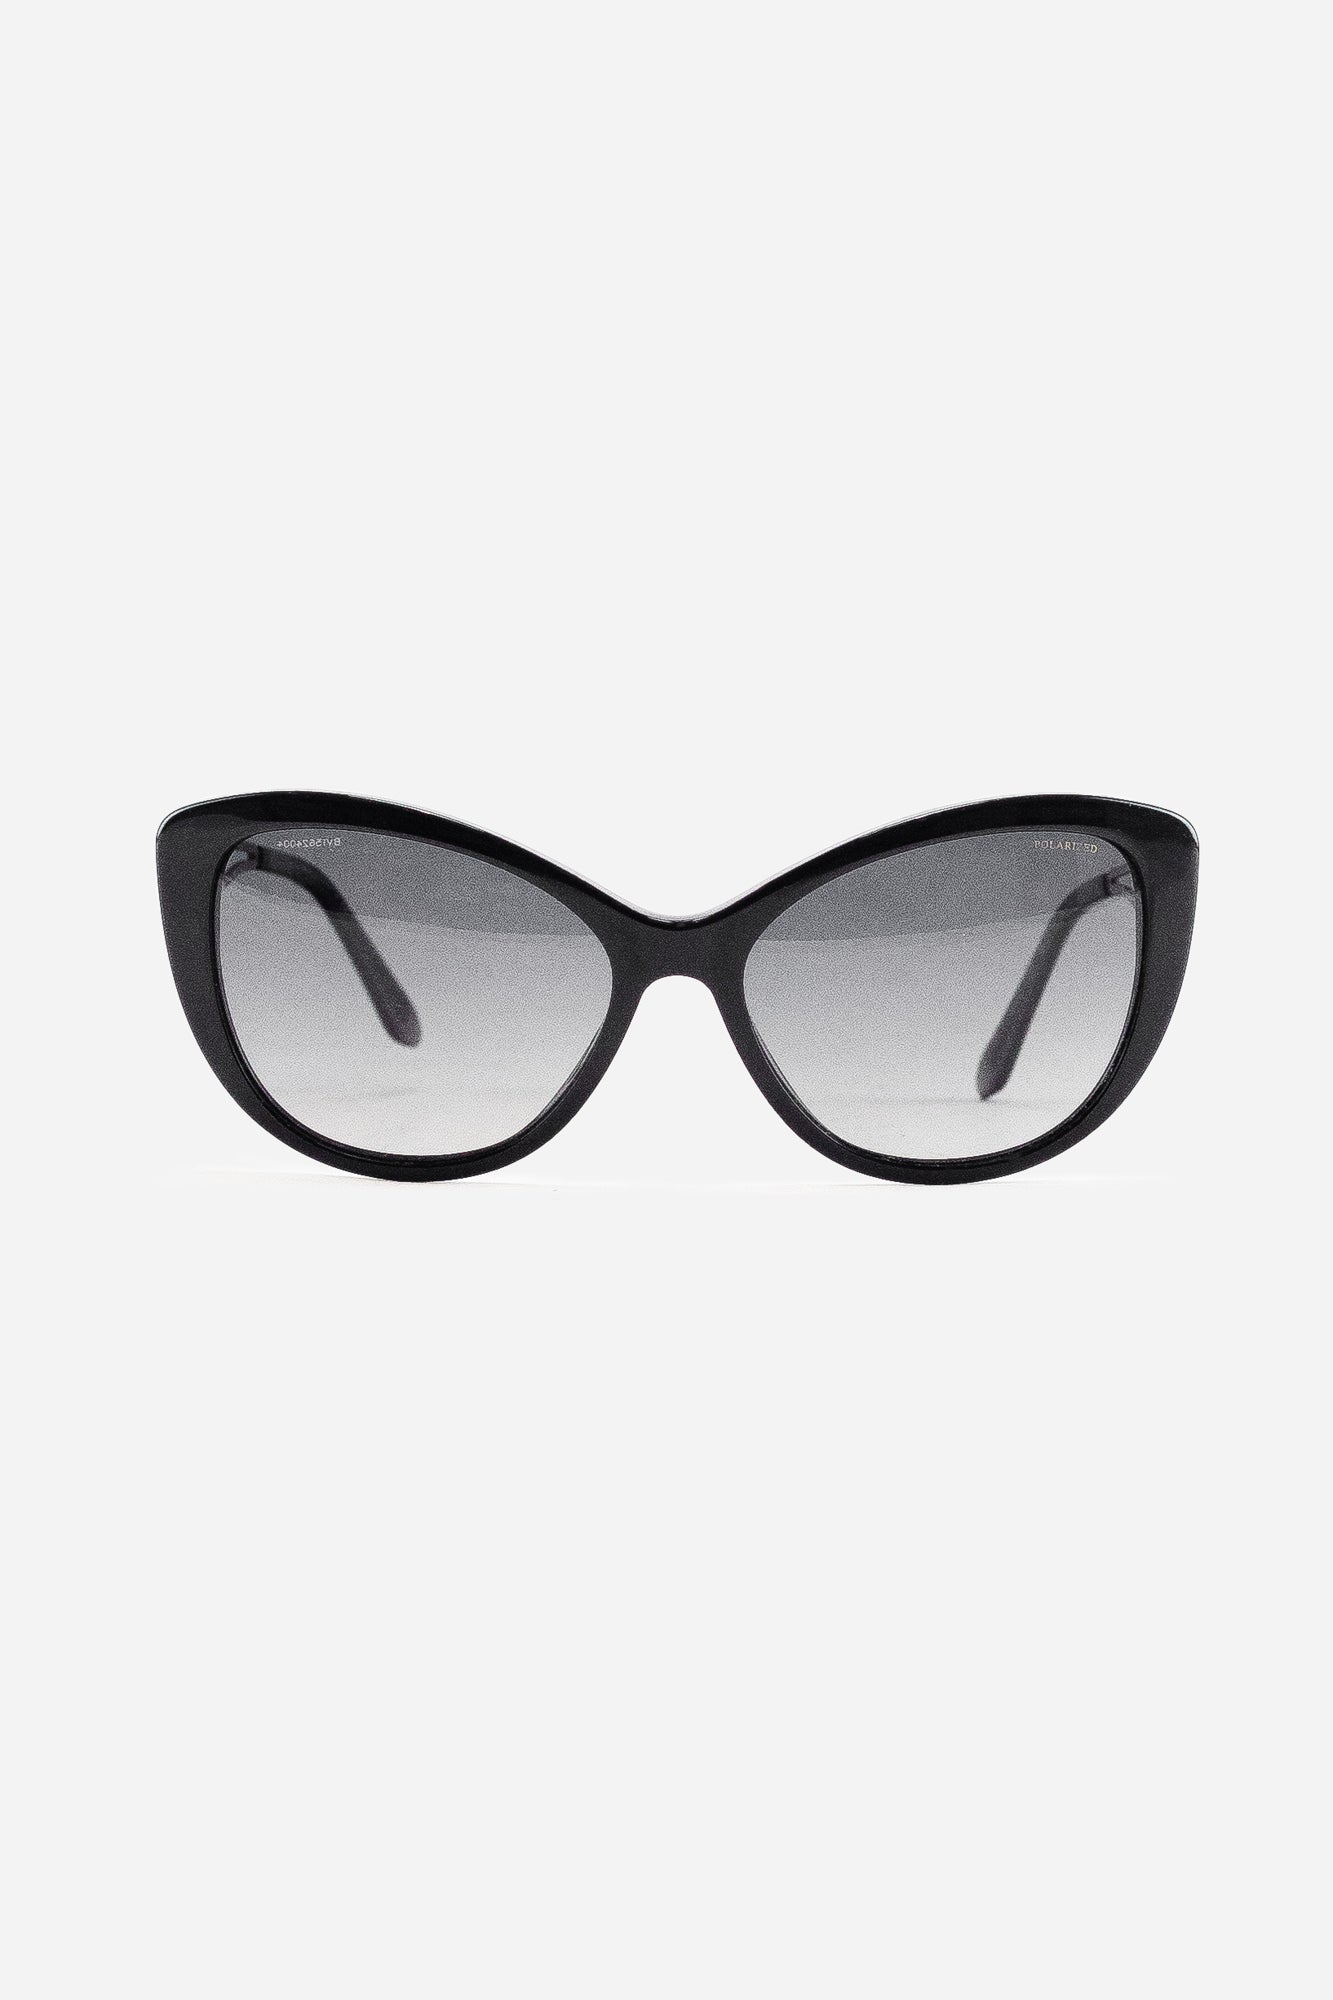 Black Cat Eye Medusa Sunglasses